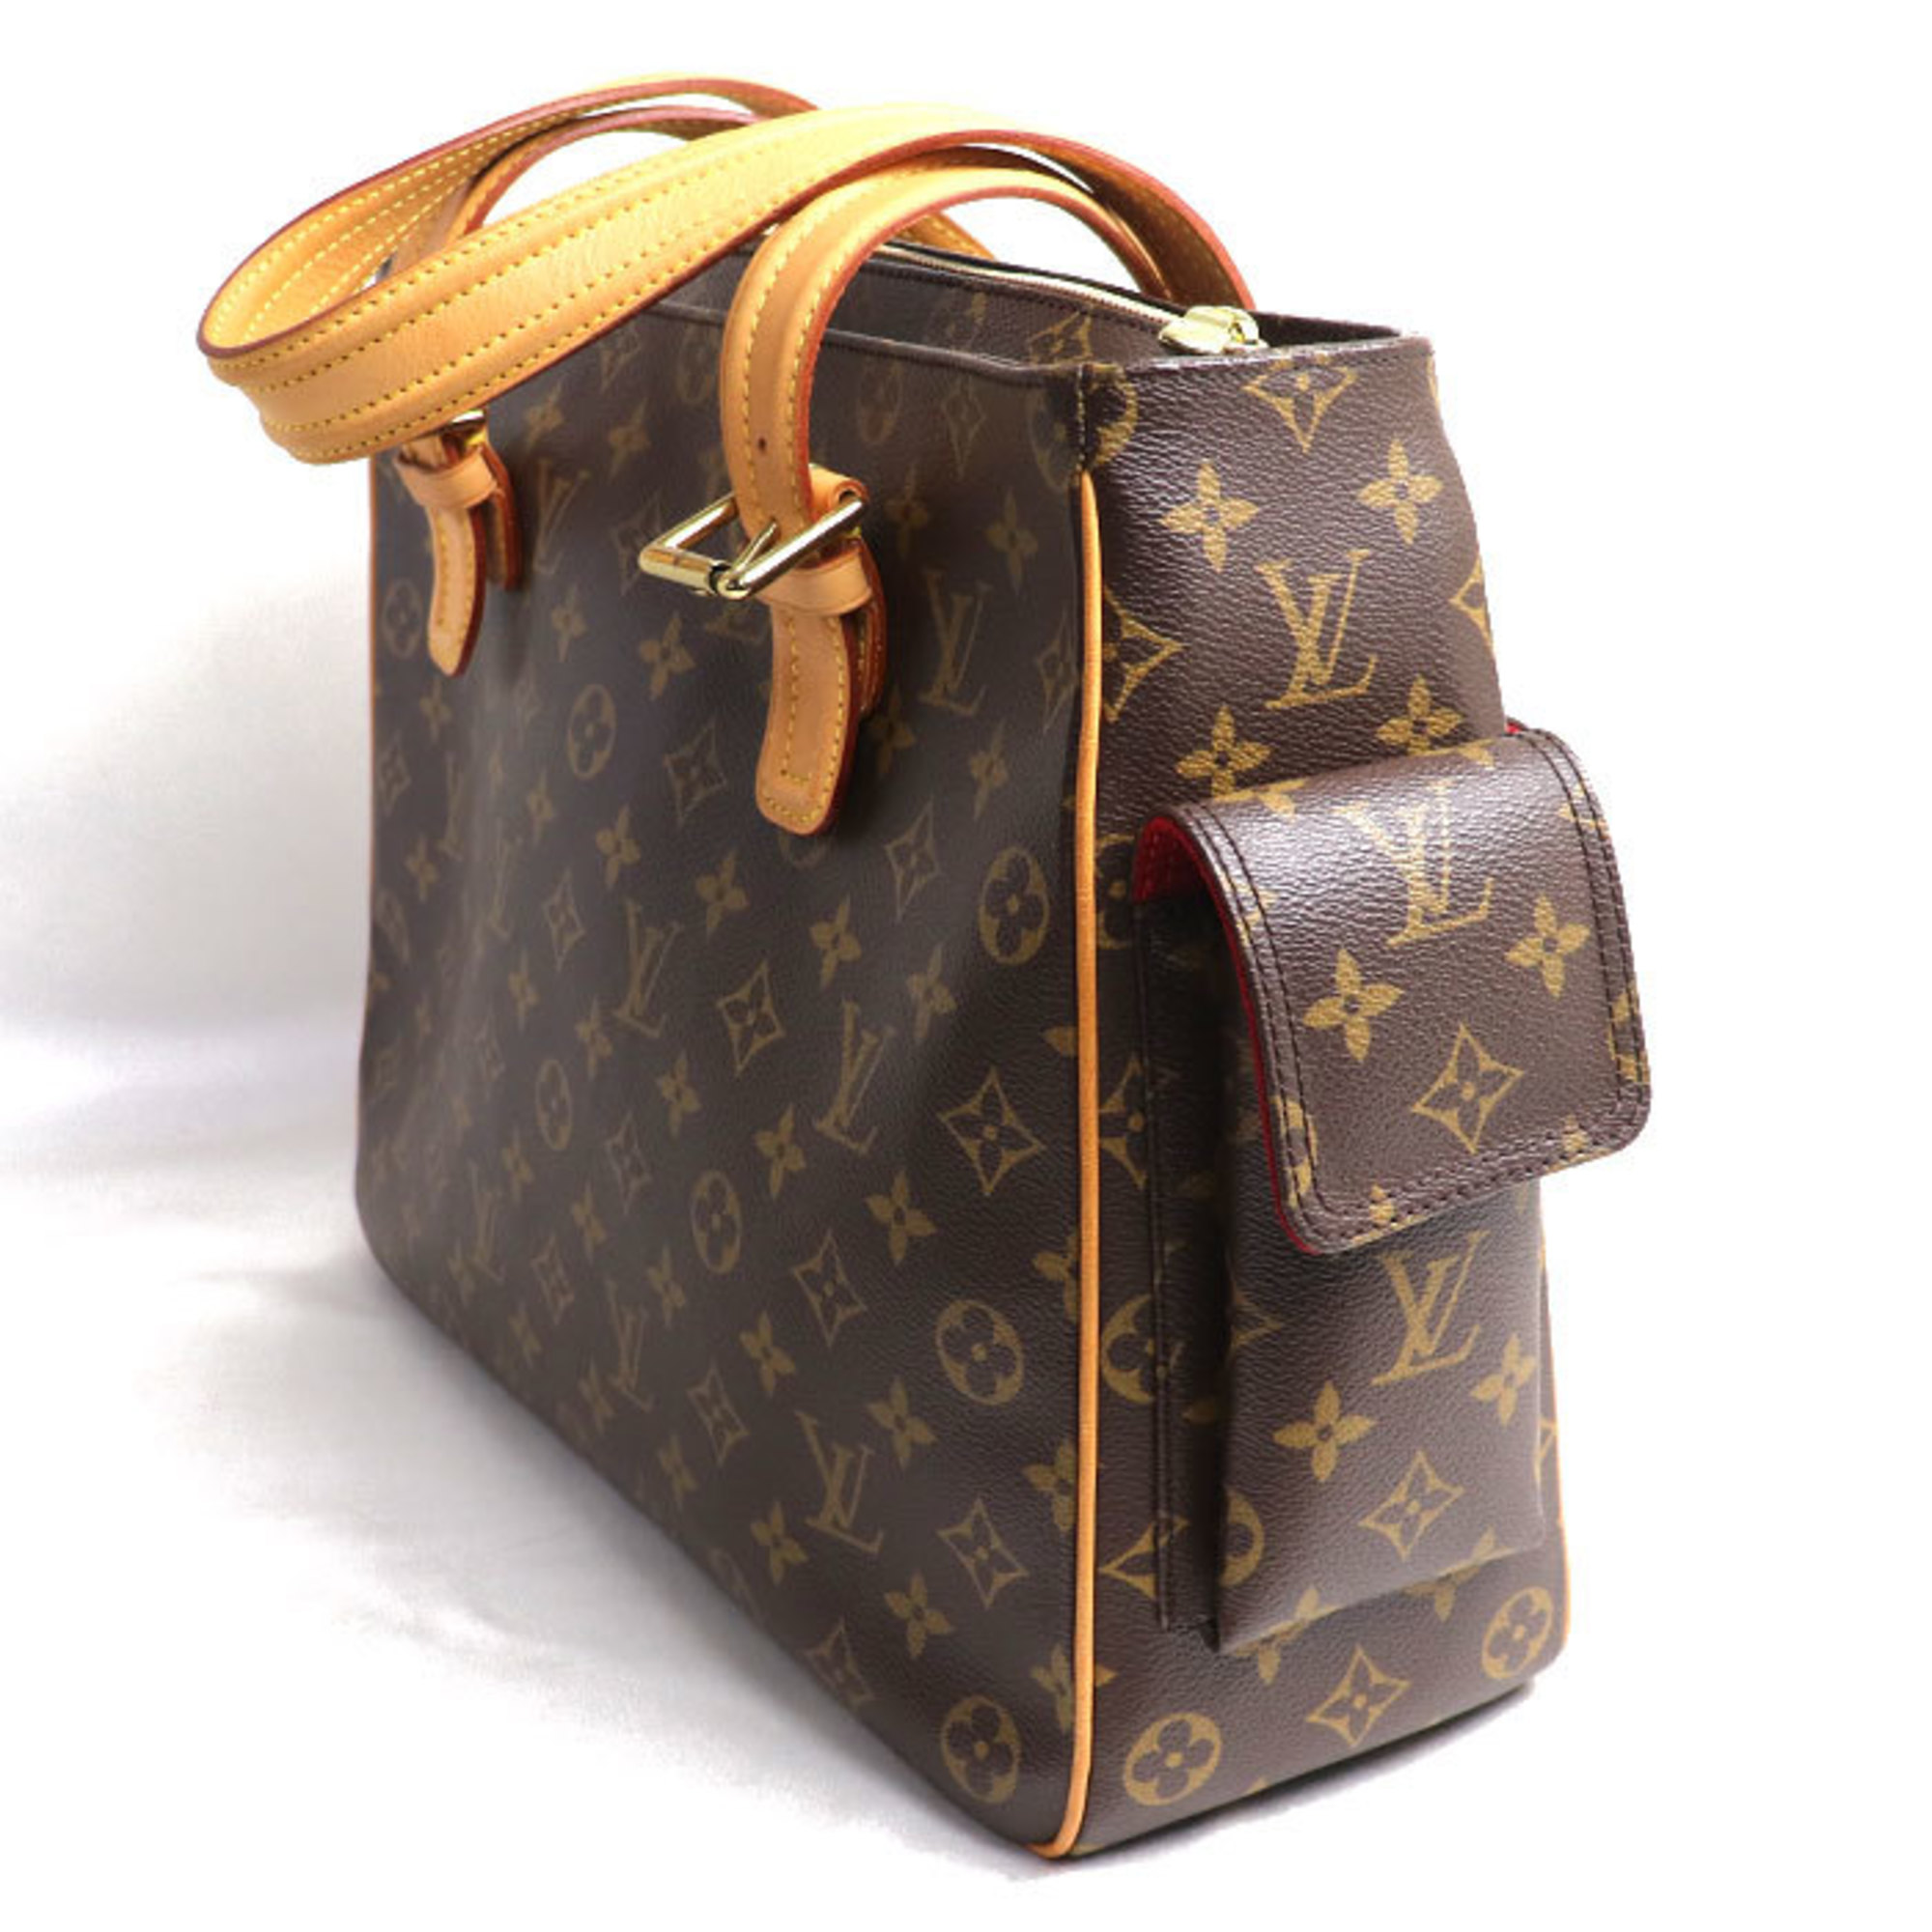 LOUIS VUITTON Louis Vuitton Multiple Cite Tote Bag Monogram Brown M51162 MB1003 Women's